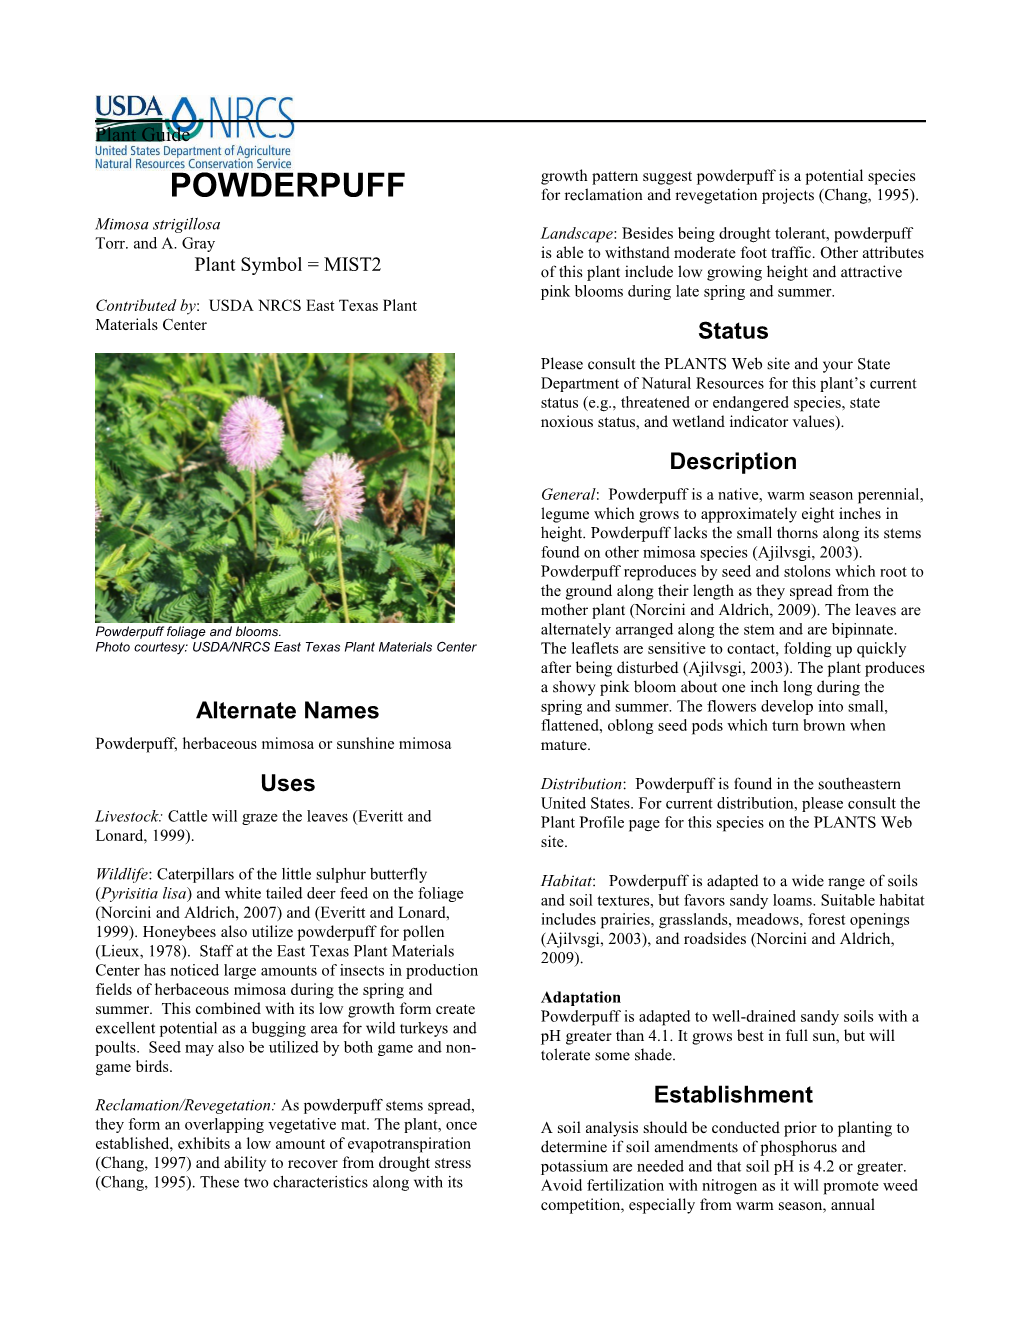 Powderpuff (Mimosa Strigillosa) Plant Guide